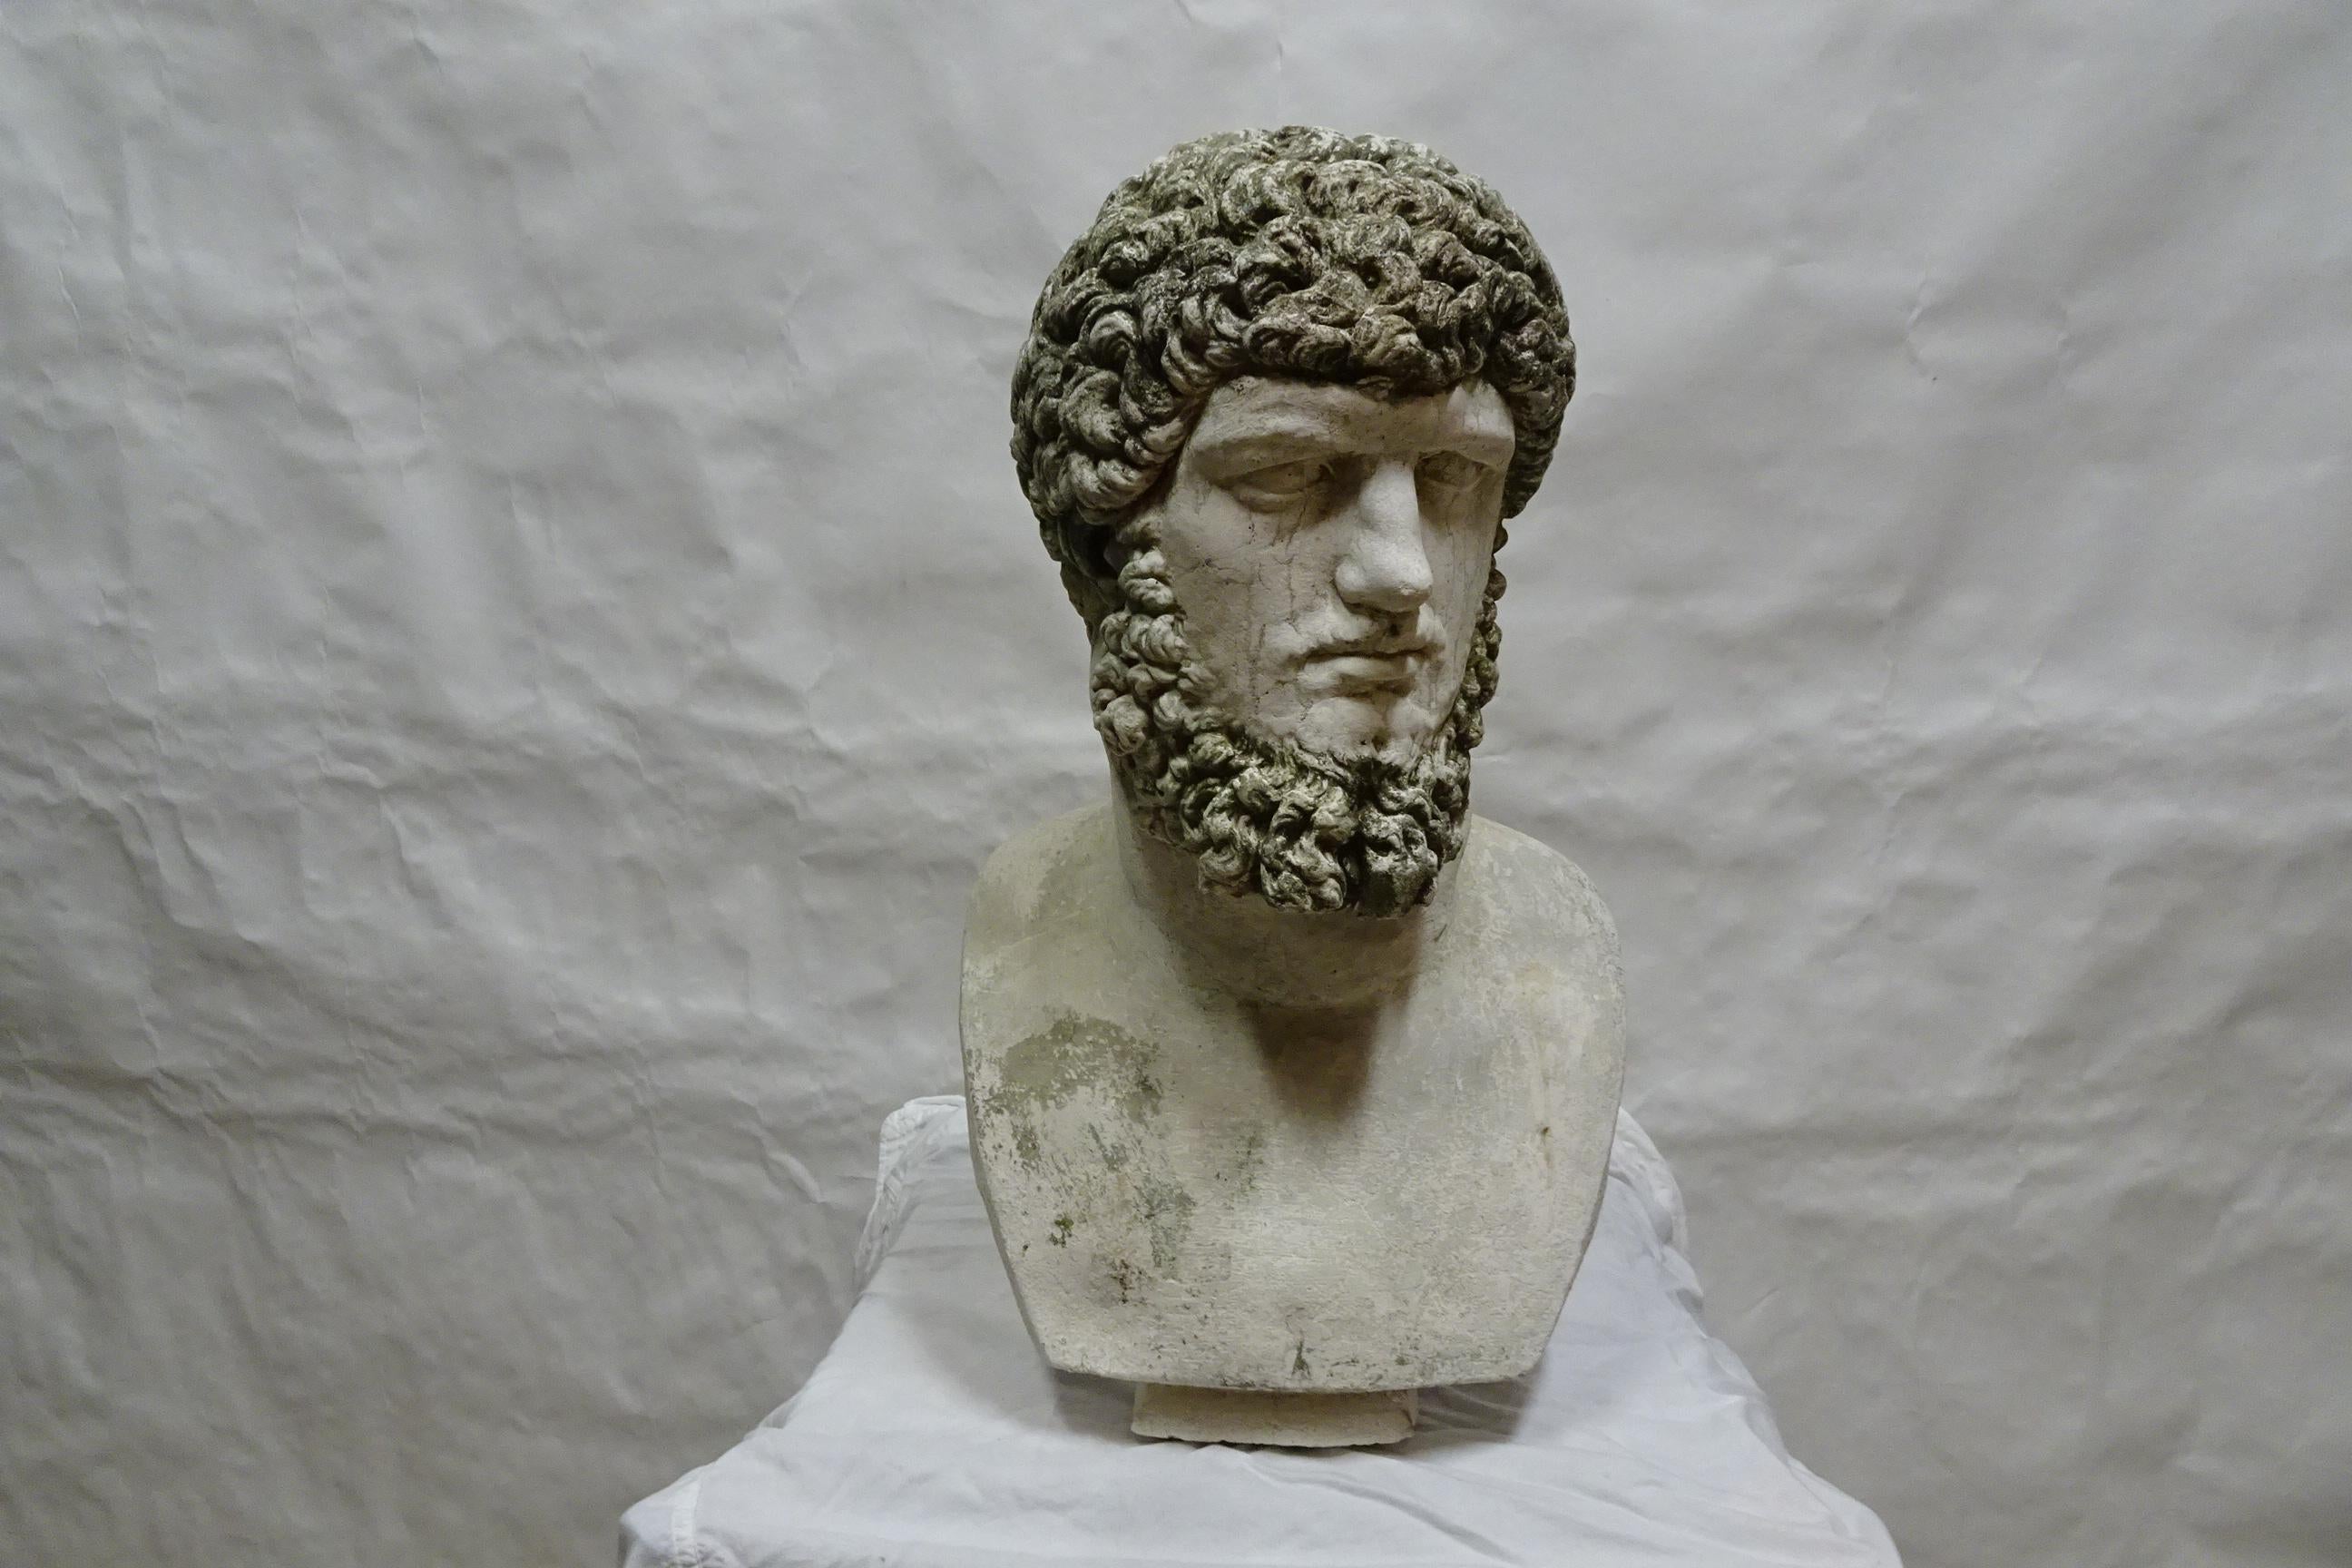 Dies ist eine einzigartige Büste des römischen Kaisers Lucius Aurelius Verus. Das Haar und der Bart sind mit Grünalgen bedeckt.